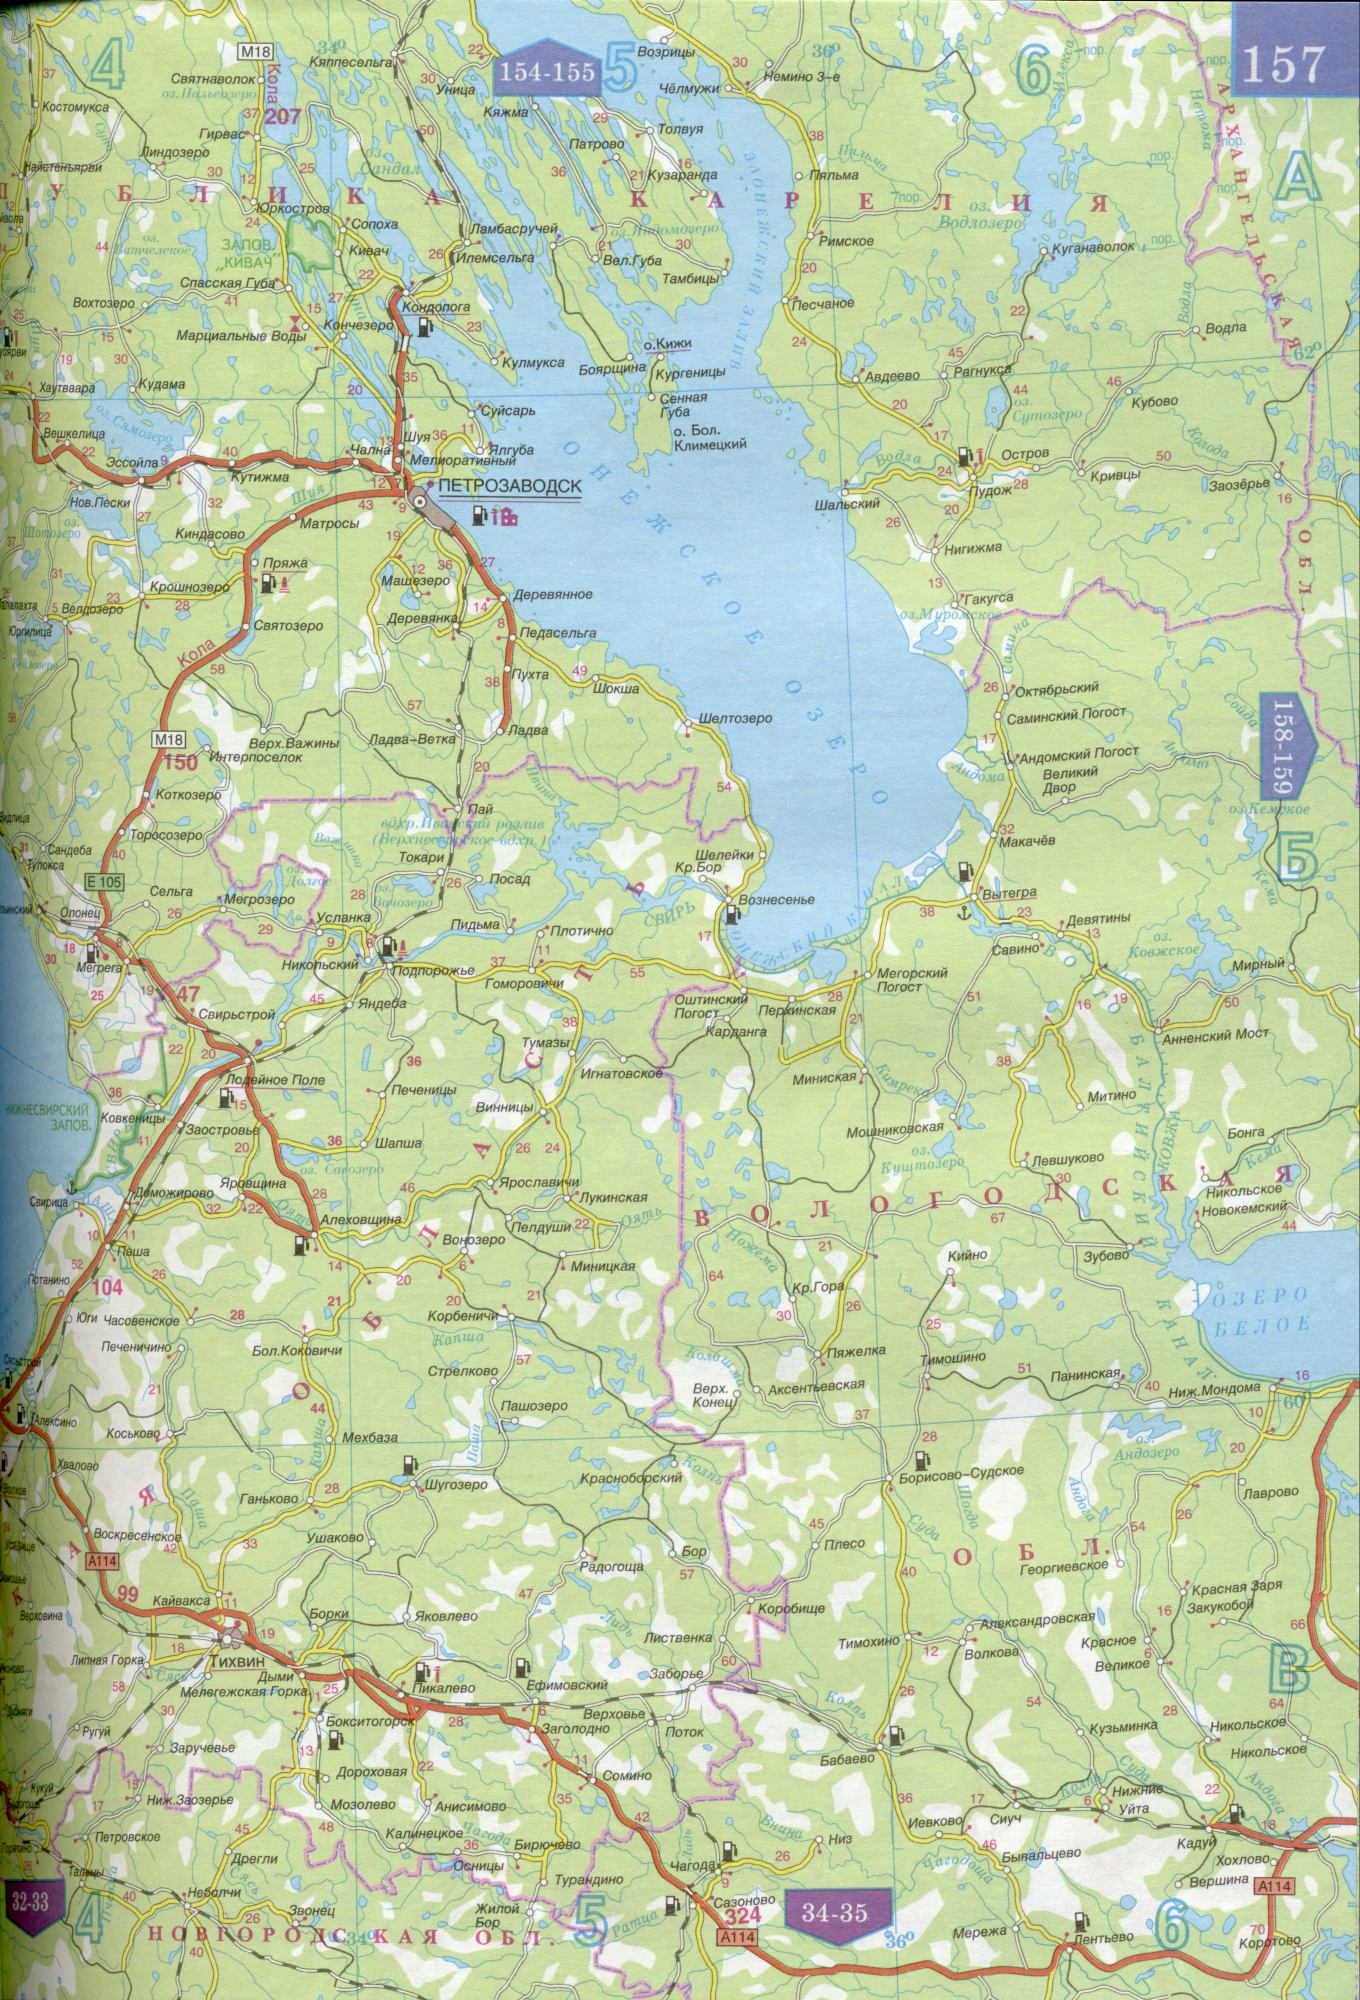 Карта республики Карелия 1см=15км. Карта автомобильных дорог республика Карелия. Скачать бесплатно подробную карту , B1 - 